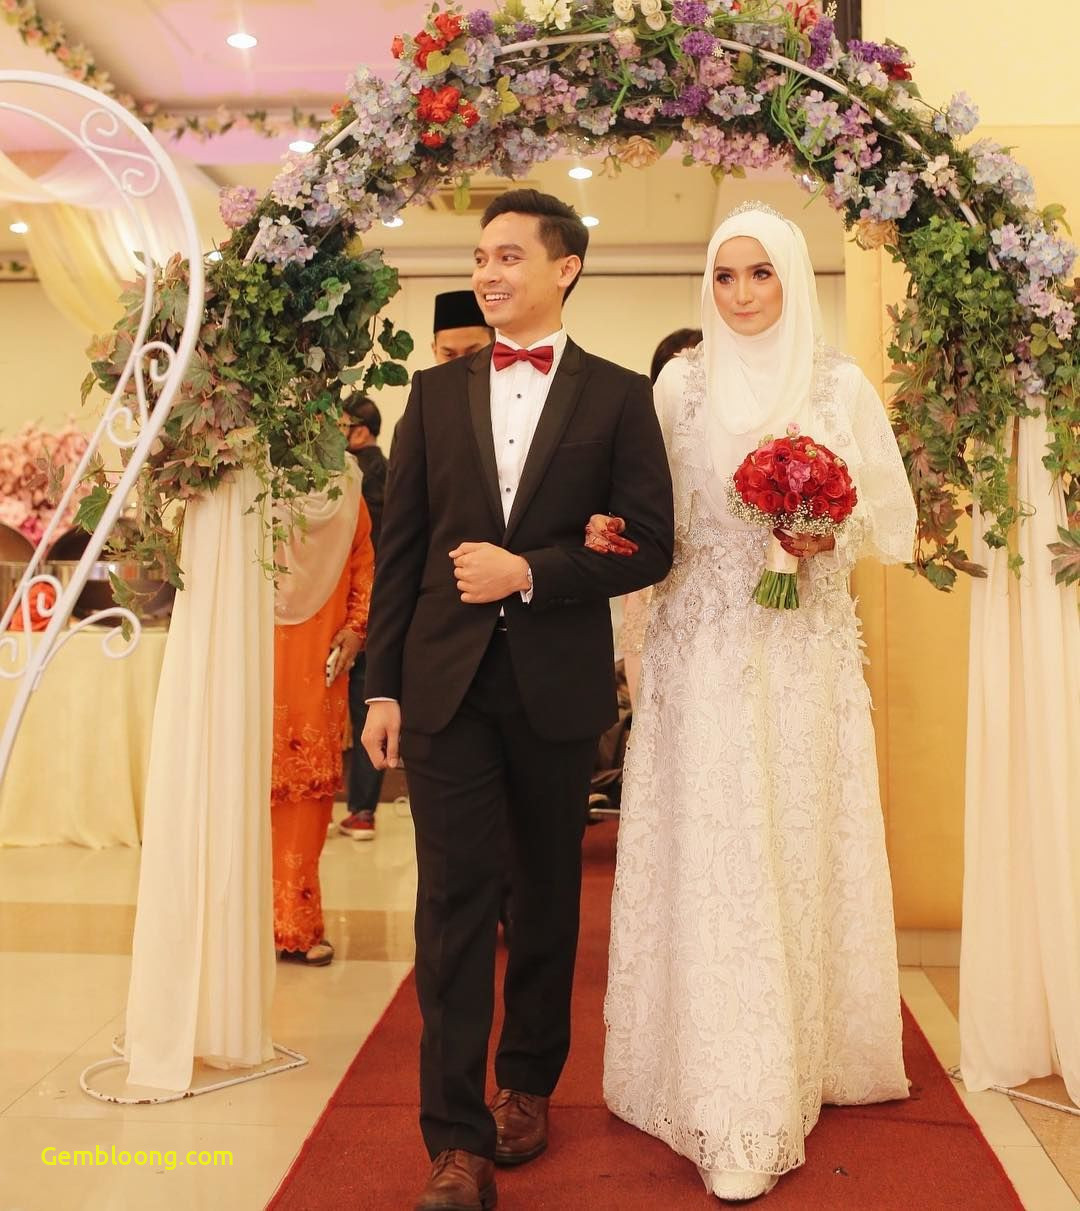 Gaun Sederhana Pengantin Berhijab Unique 12 Desain Gaun Pernikahan Muslimah Elegan Nan Sederhana